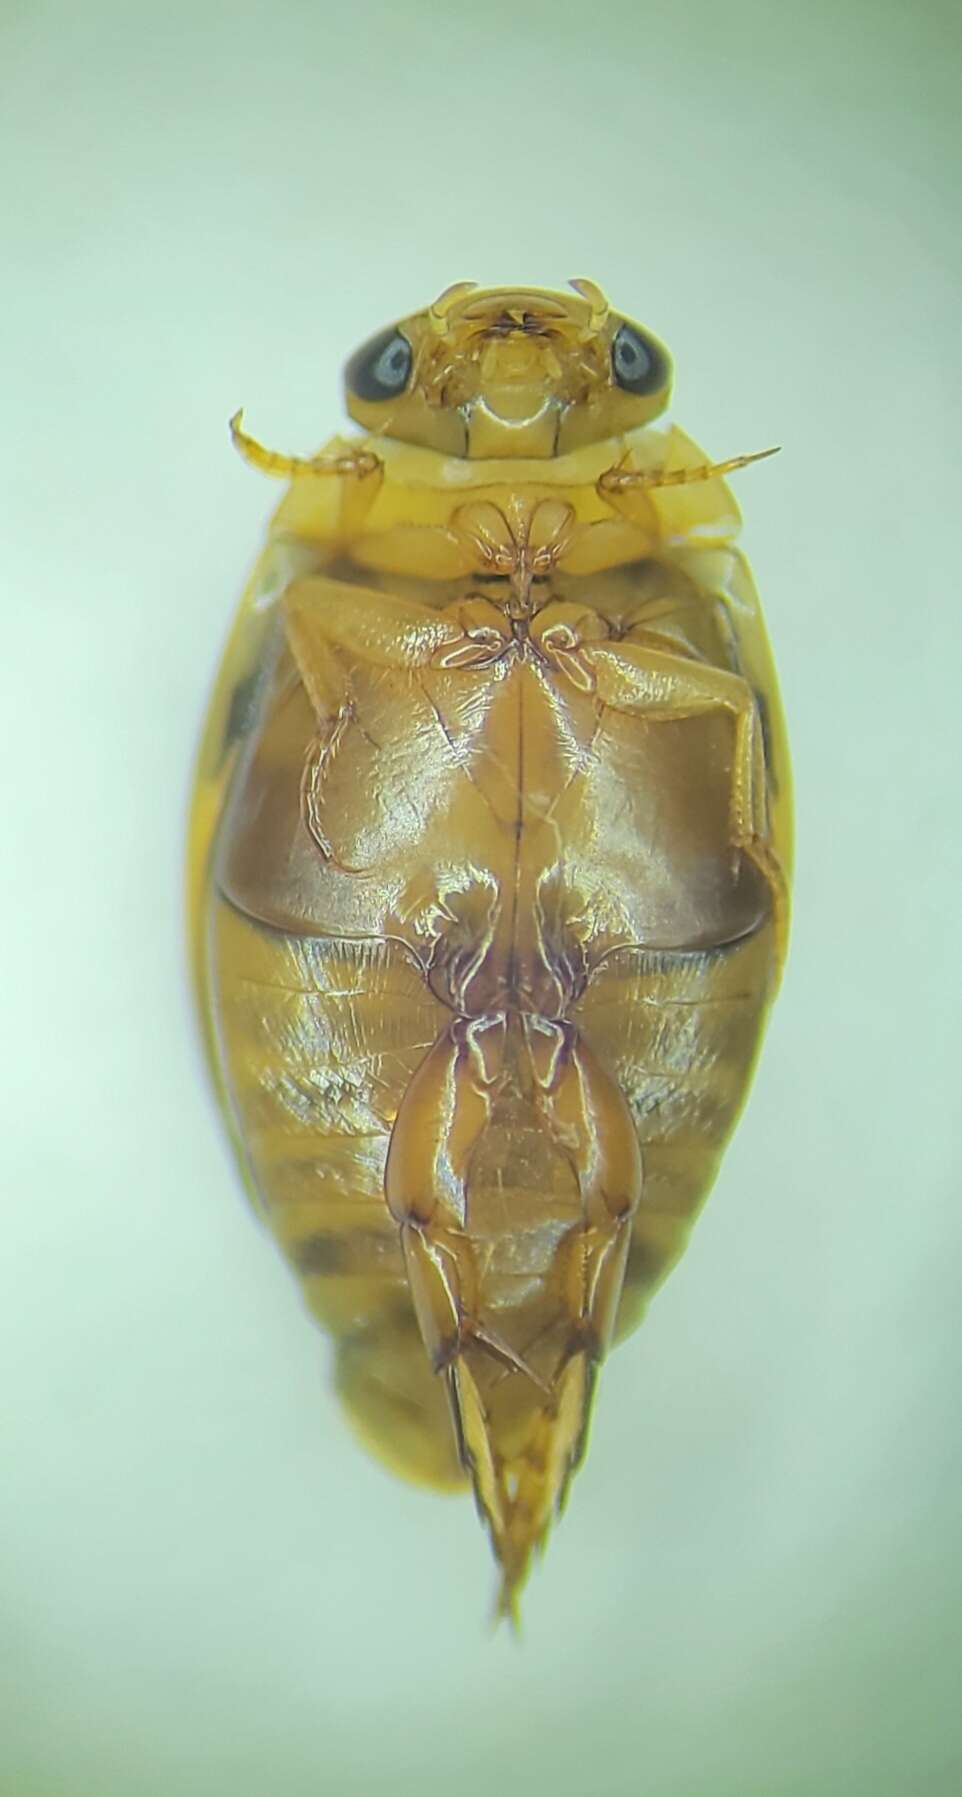 Image of Laccophilus maculosus shermani Leech 1944